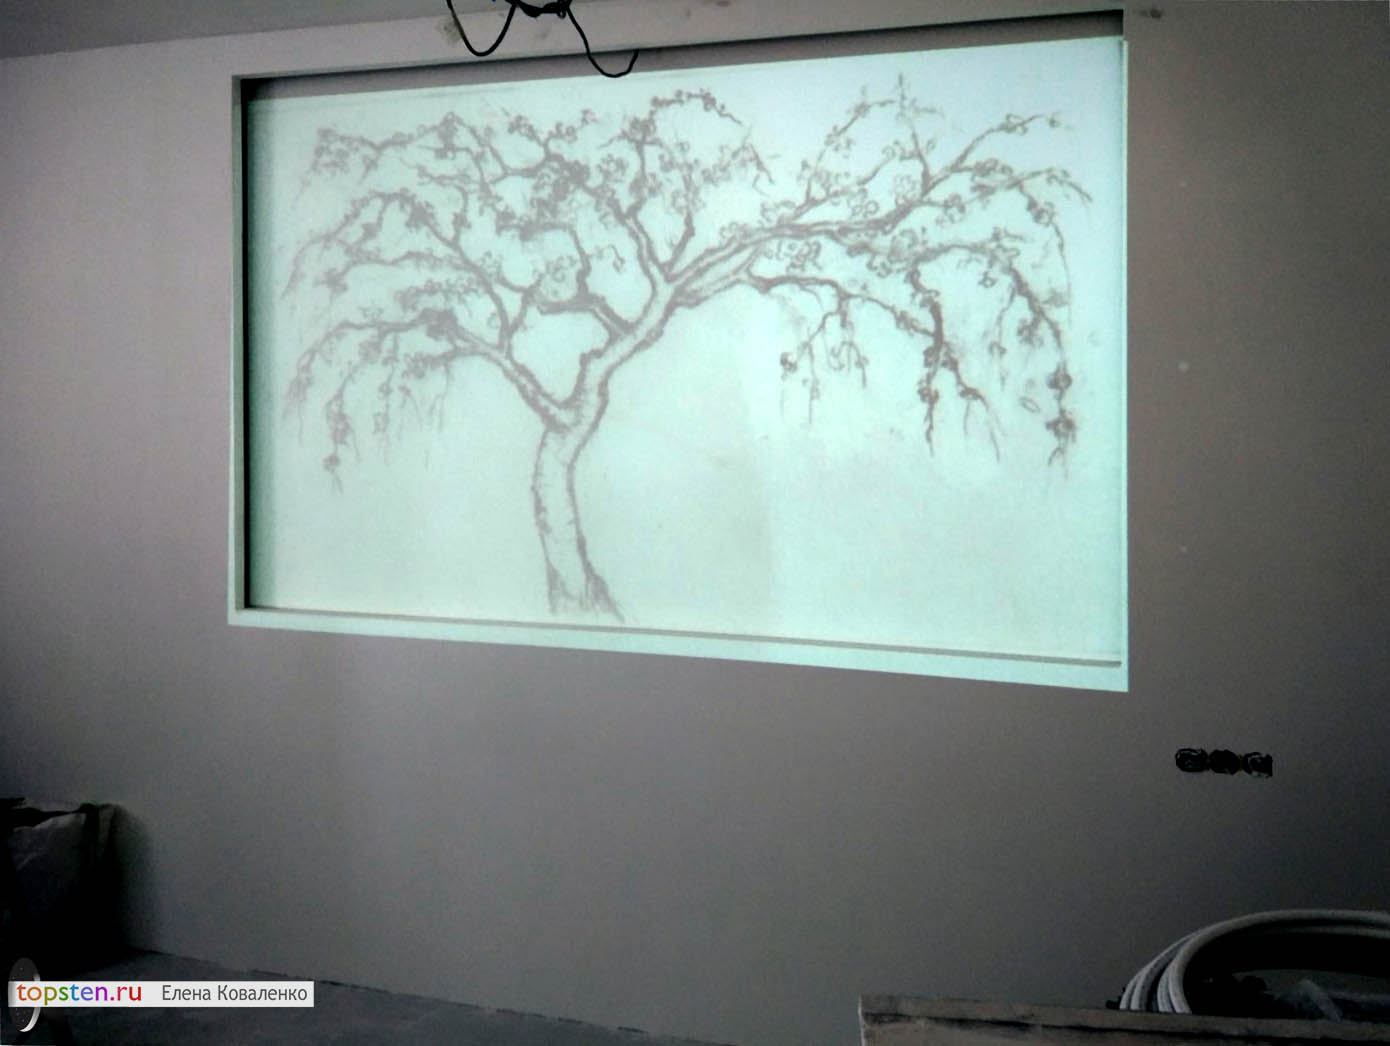 Рисунок лепнины спроецирован проектором на нишу в стене